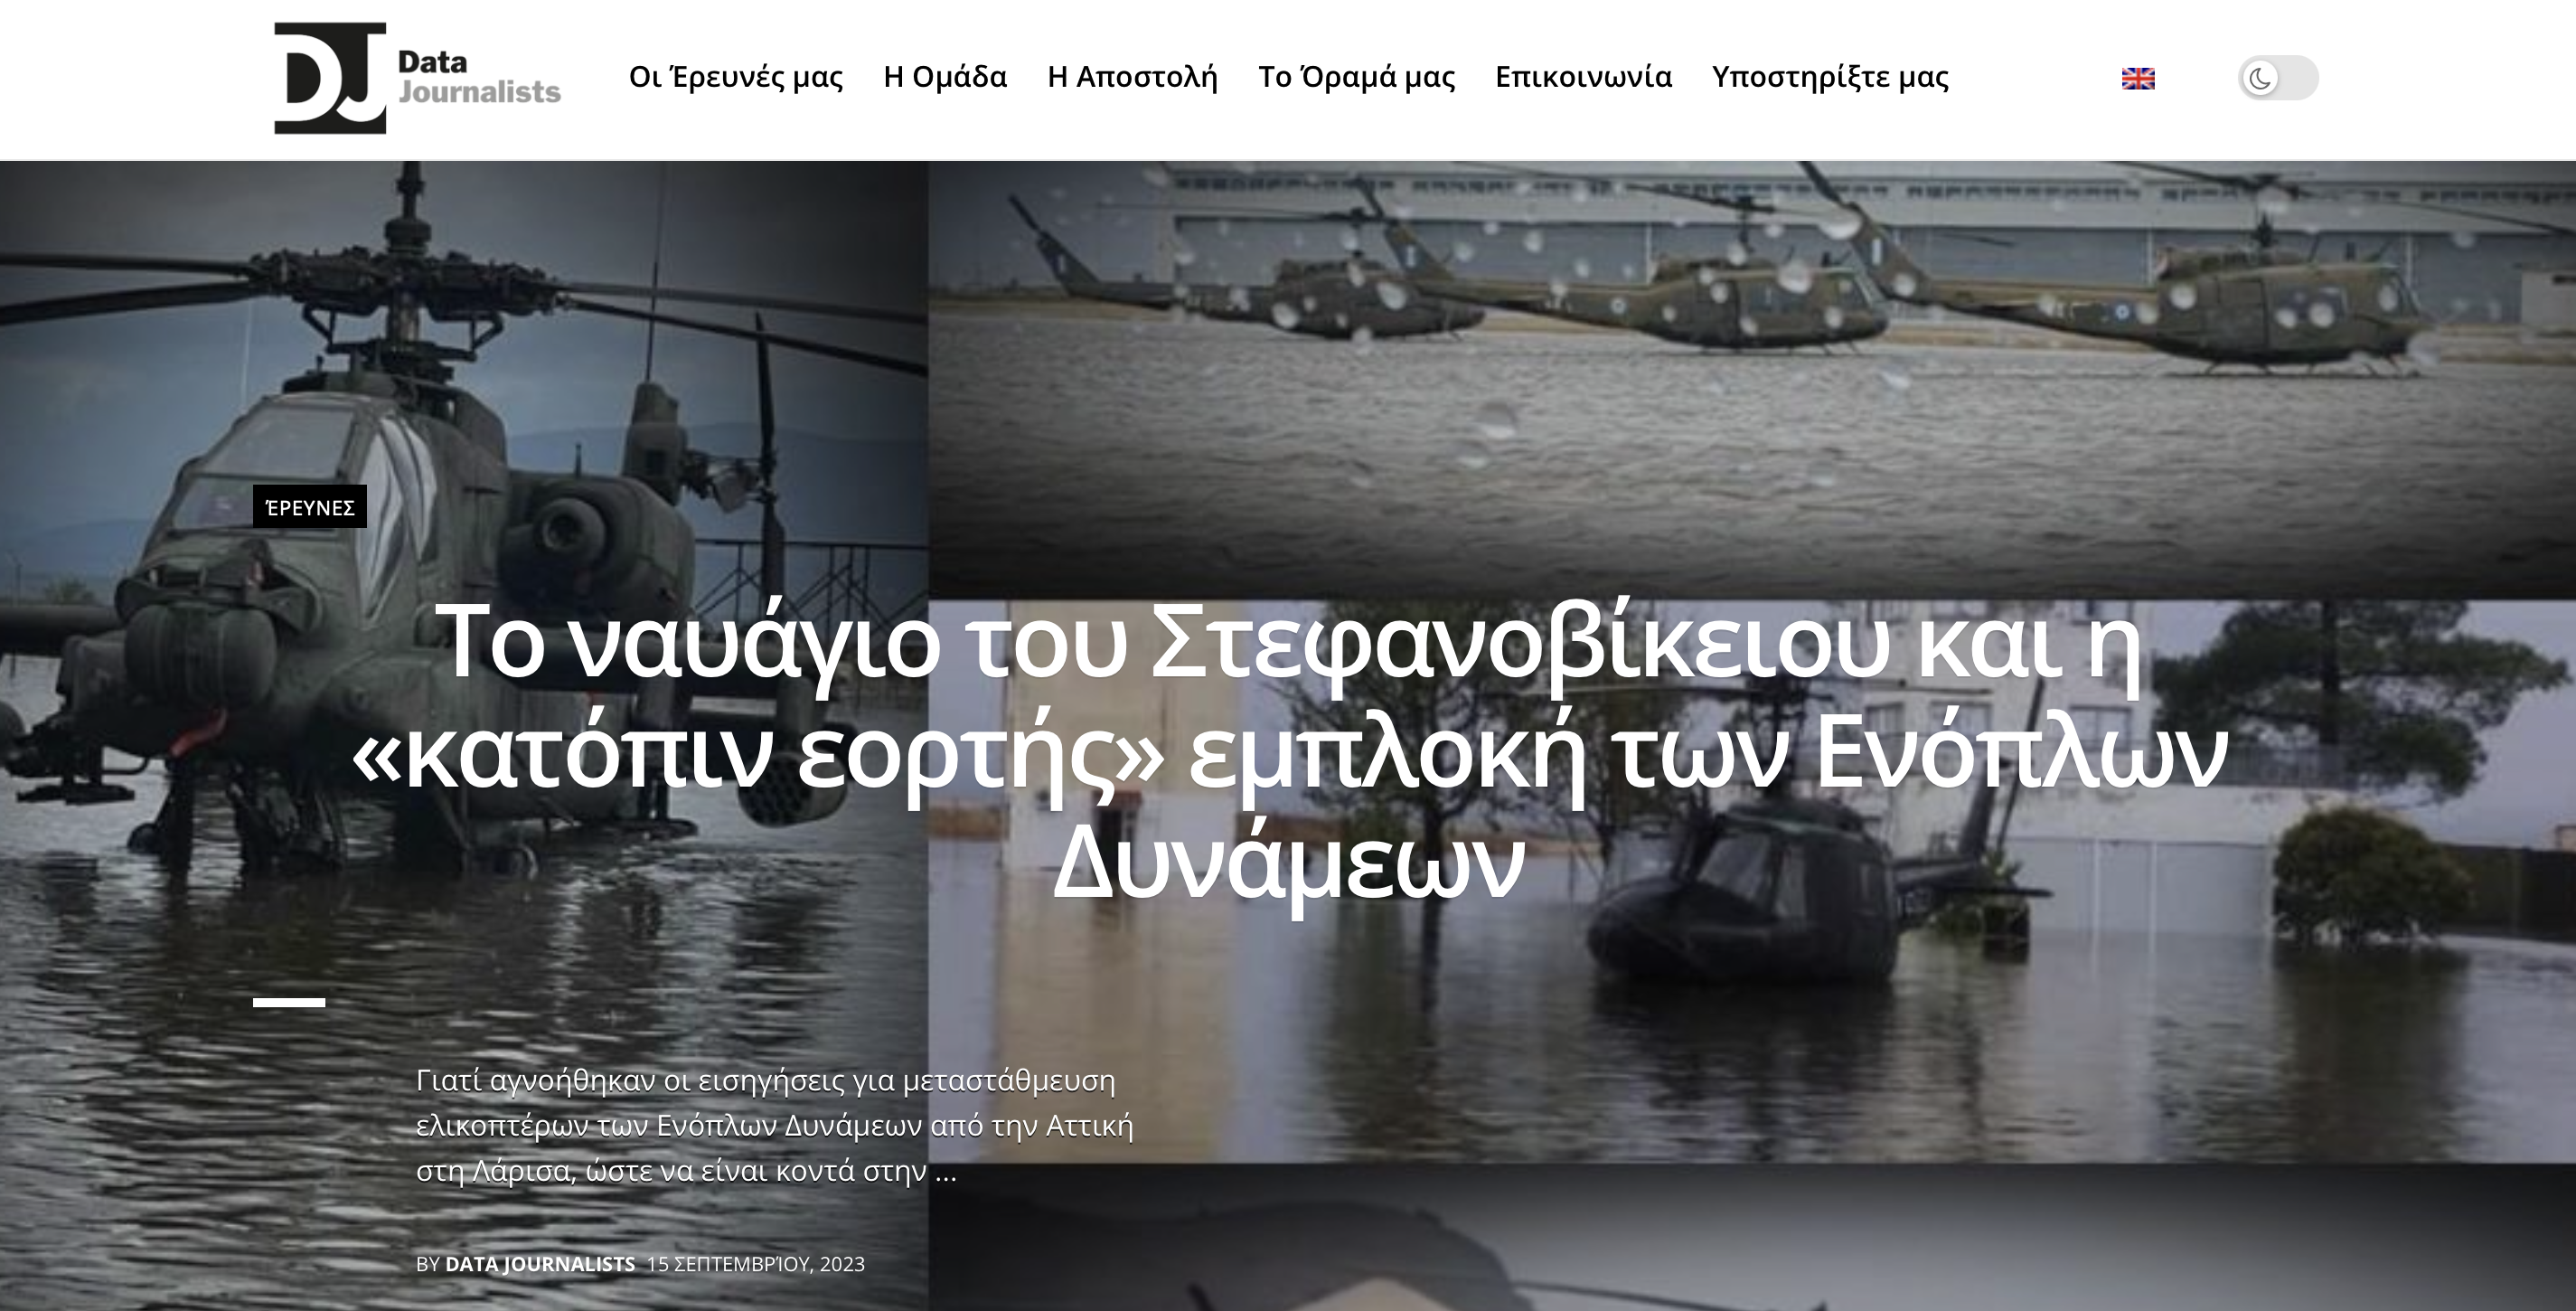 Το ναυάγιο του Στεφανοβίκειου και η «κατόπιν εορτής» εμπλοκή των ΕΔ- Data Journalists